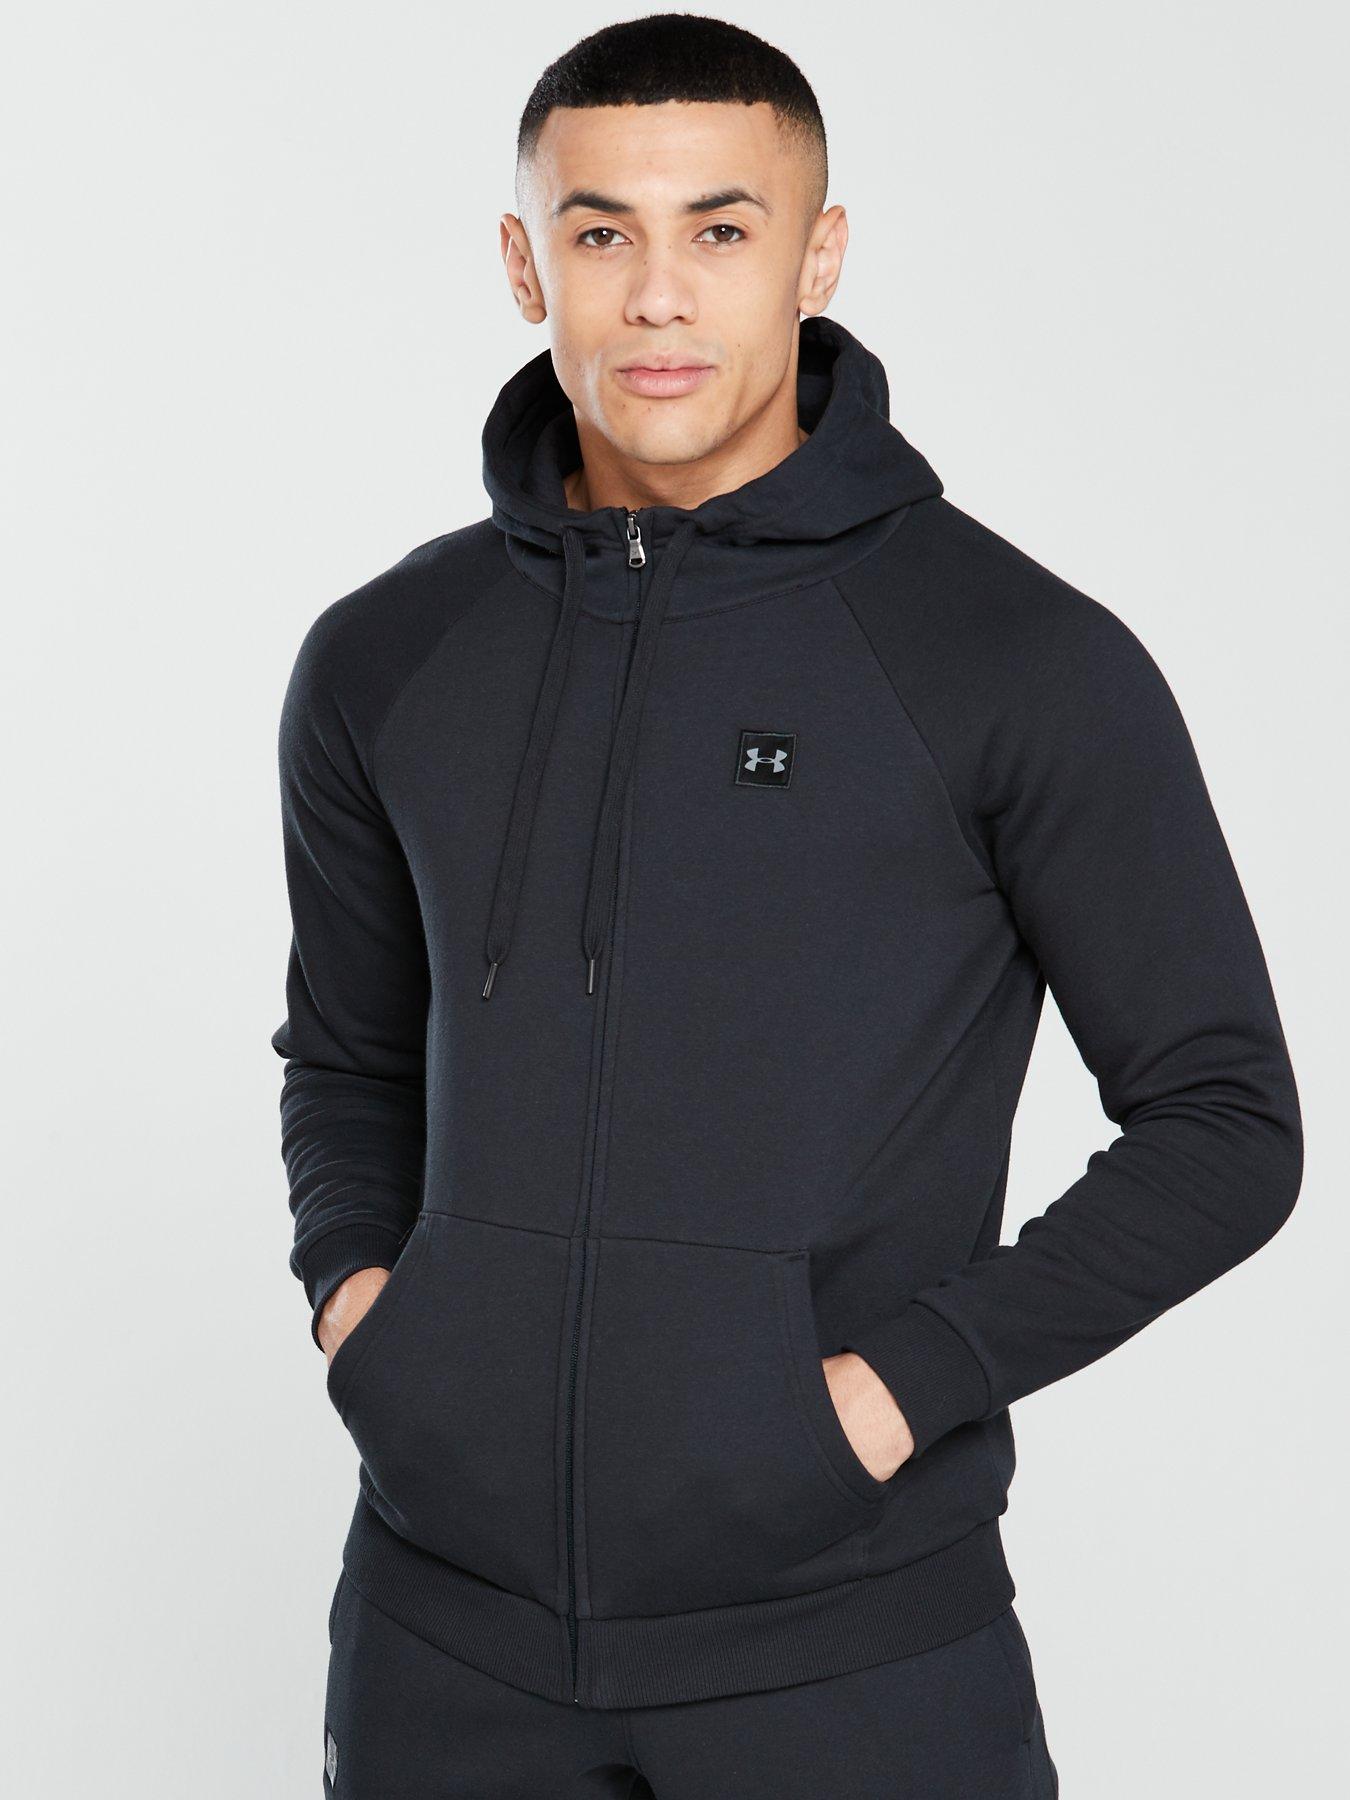 under armour black zip hoodie